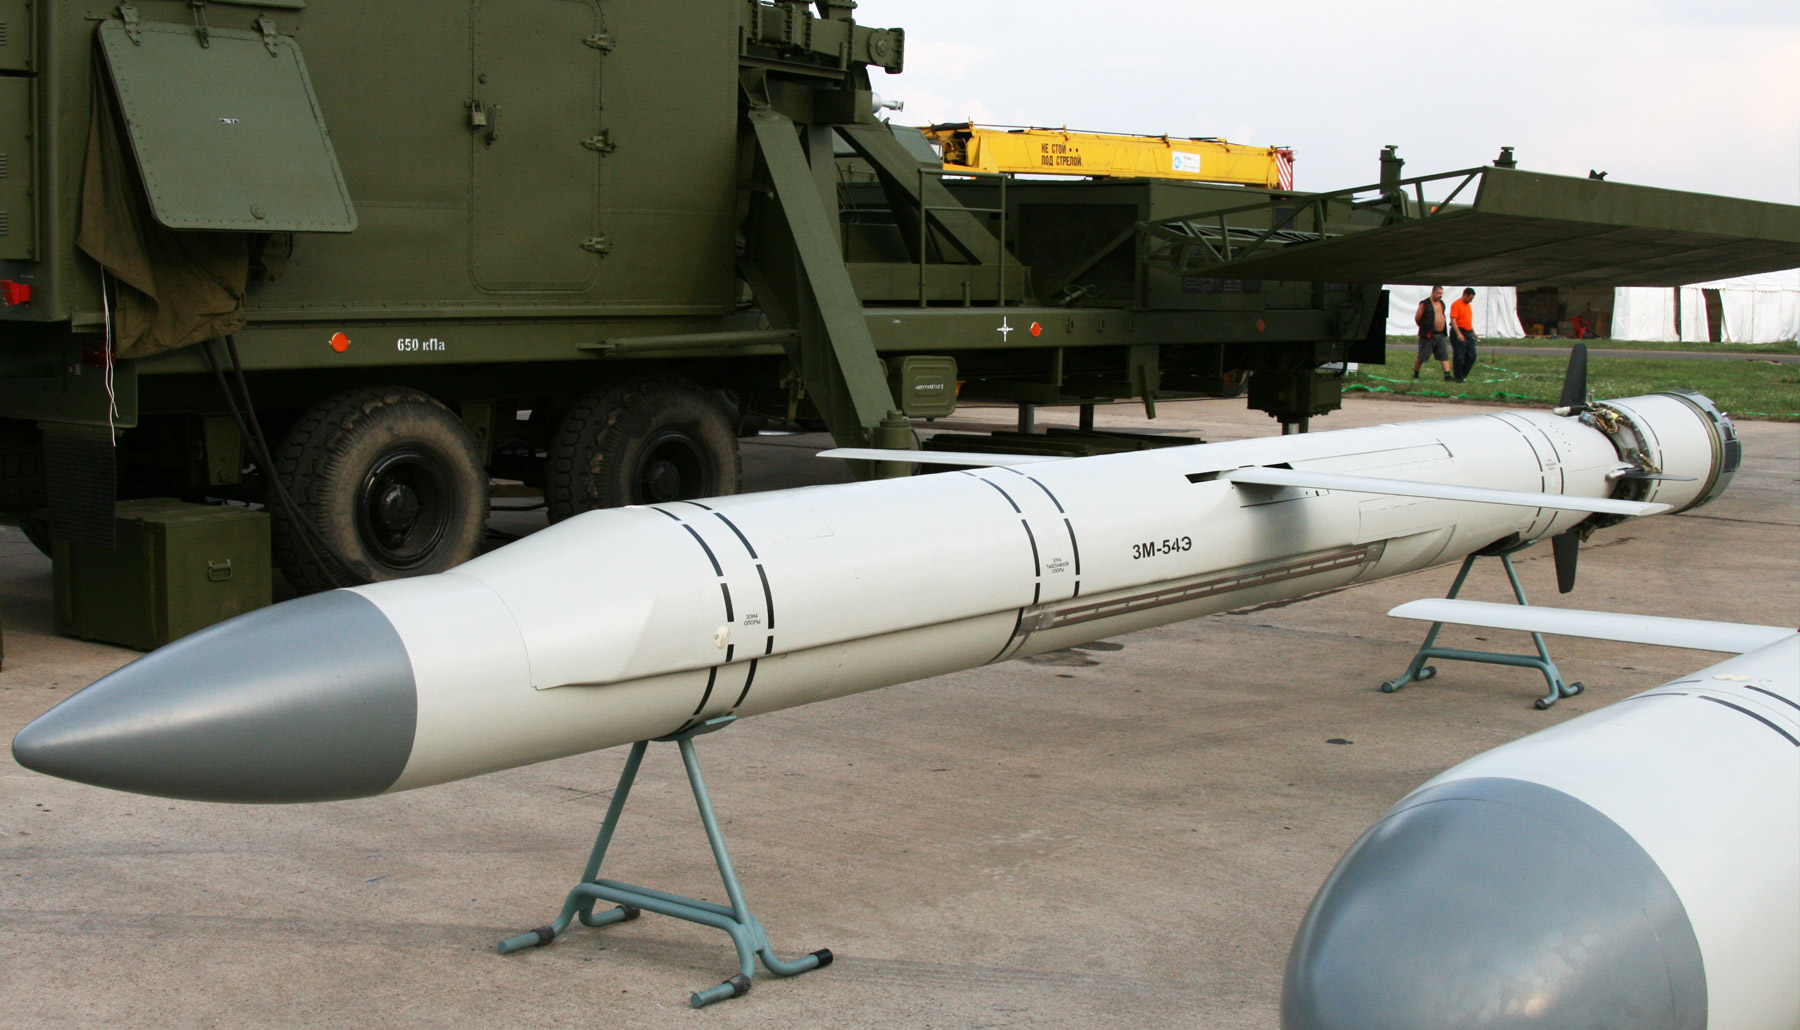 Крылатые ракеты россии в сирии: оценка китайских аналитиков